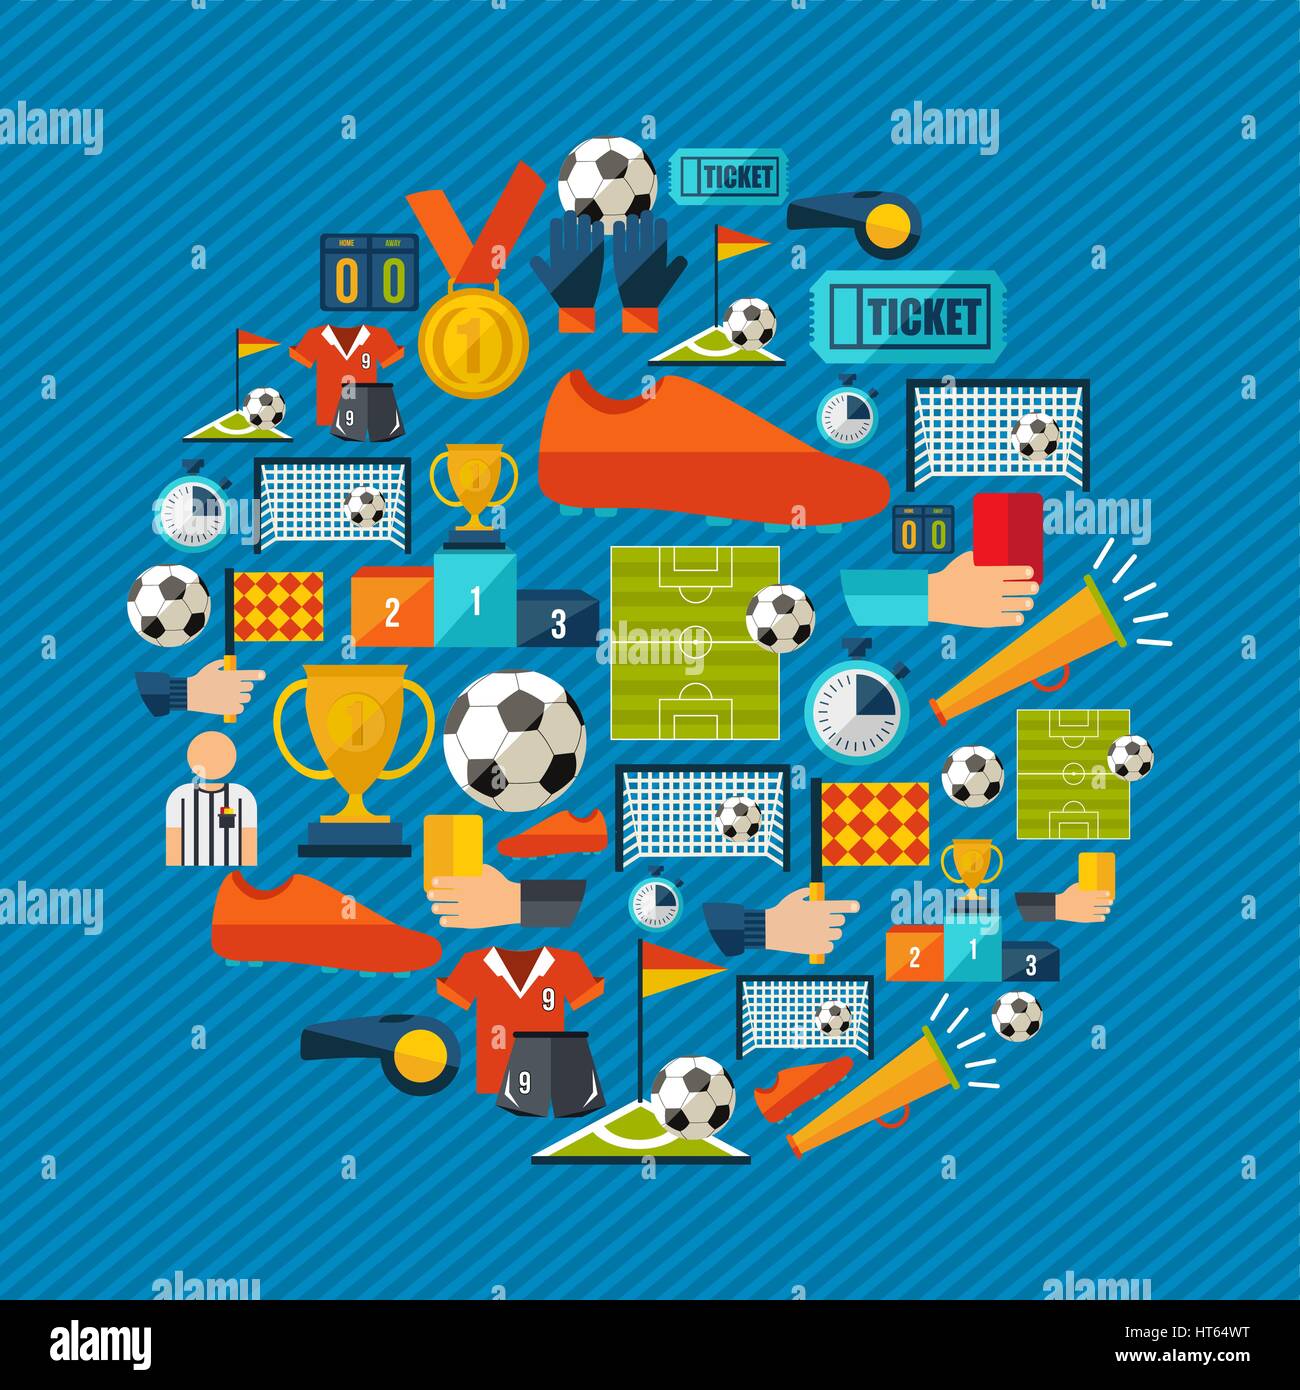 Fußball-Kultur-Icon-Set. Sport-Elemente für Football-Spiel, Ball, Schuhe, Champion Cup und mehr enthält. EPS10 Vektor. Stock Vektor